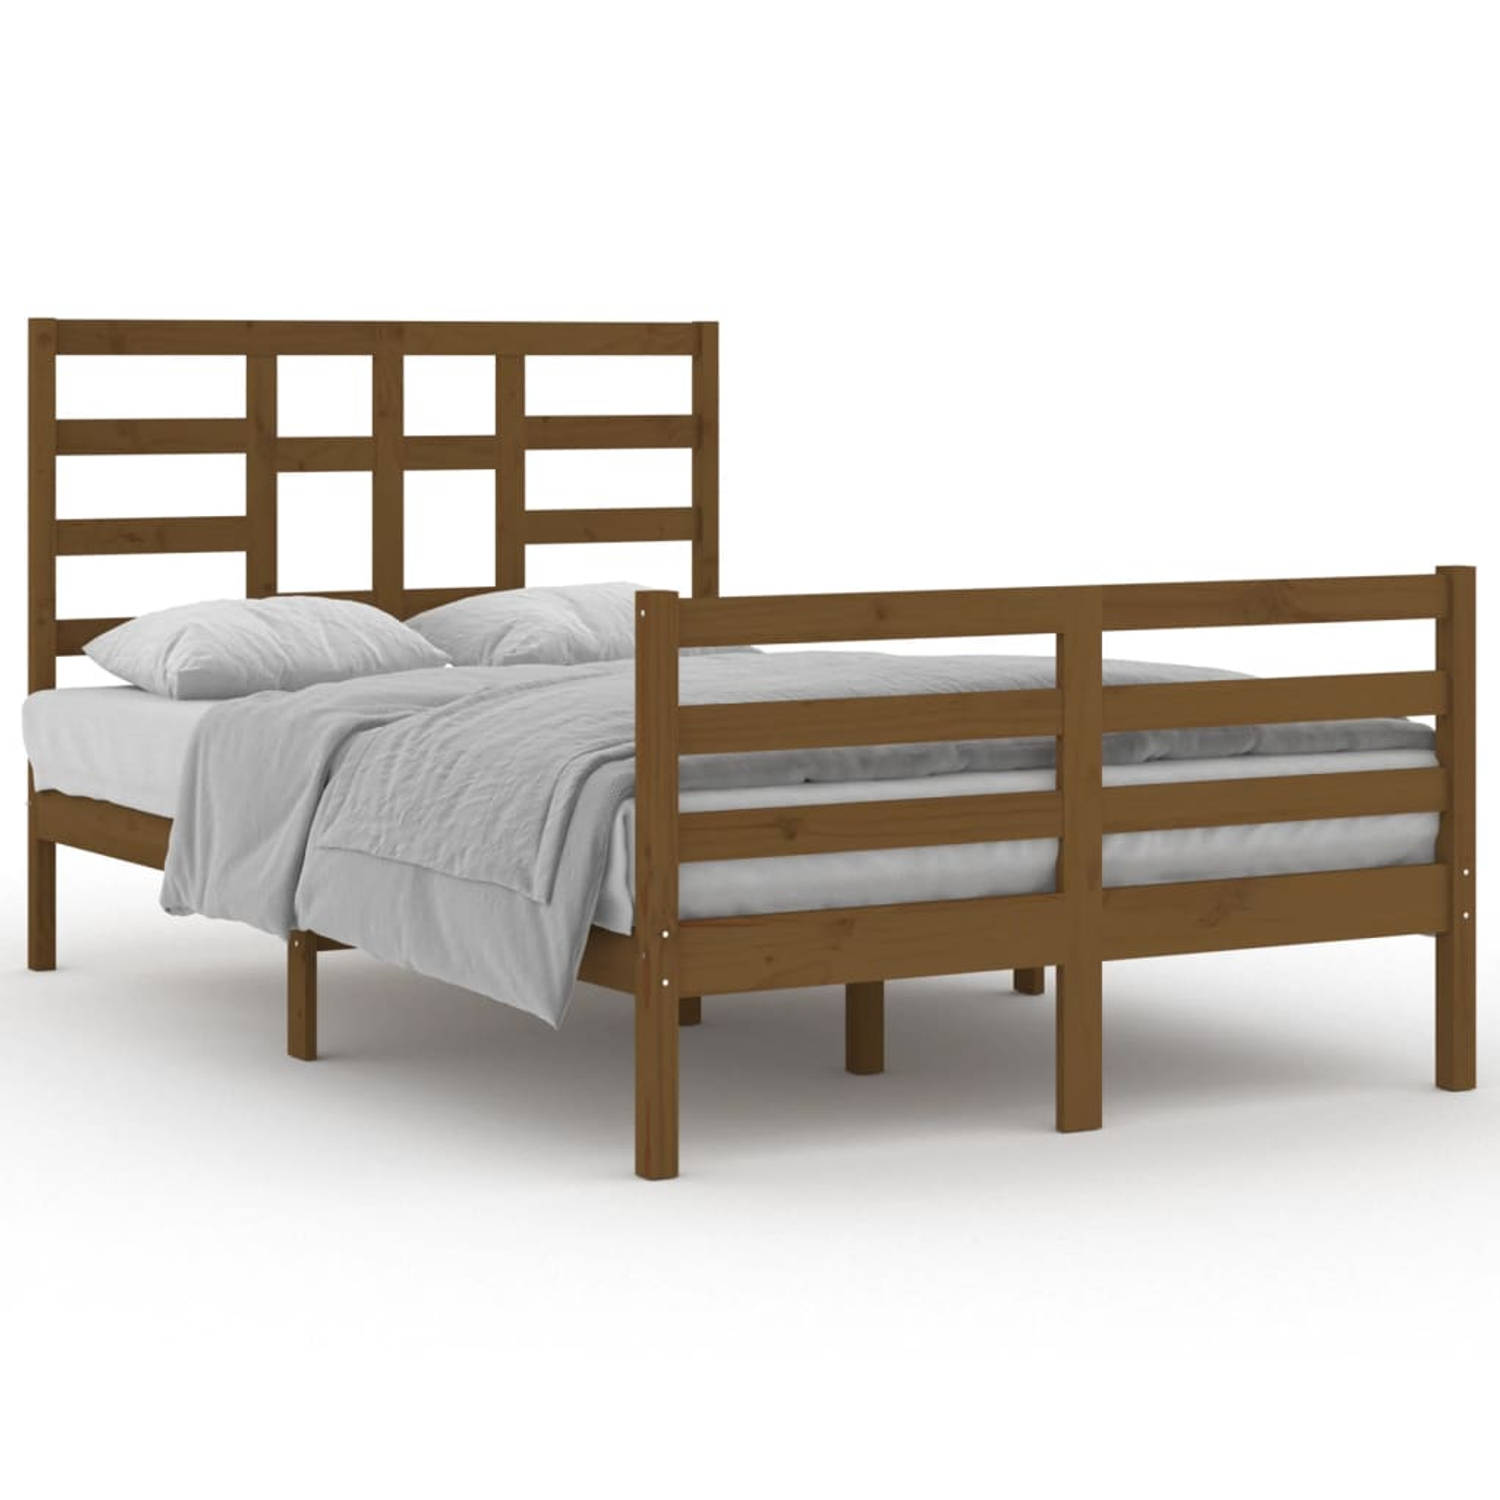 The Living Store Bedframe massief hout honingbruin 120x200 cm - Bedframe - Bedframes - Bed - Bedbodem - Ledikant - Bed Frame - Massief Houten Bedframe - Slaapmeubel - Tweepersoonsb